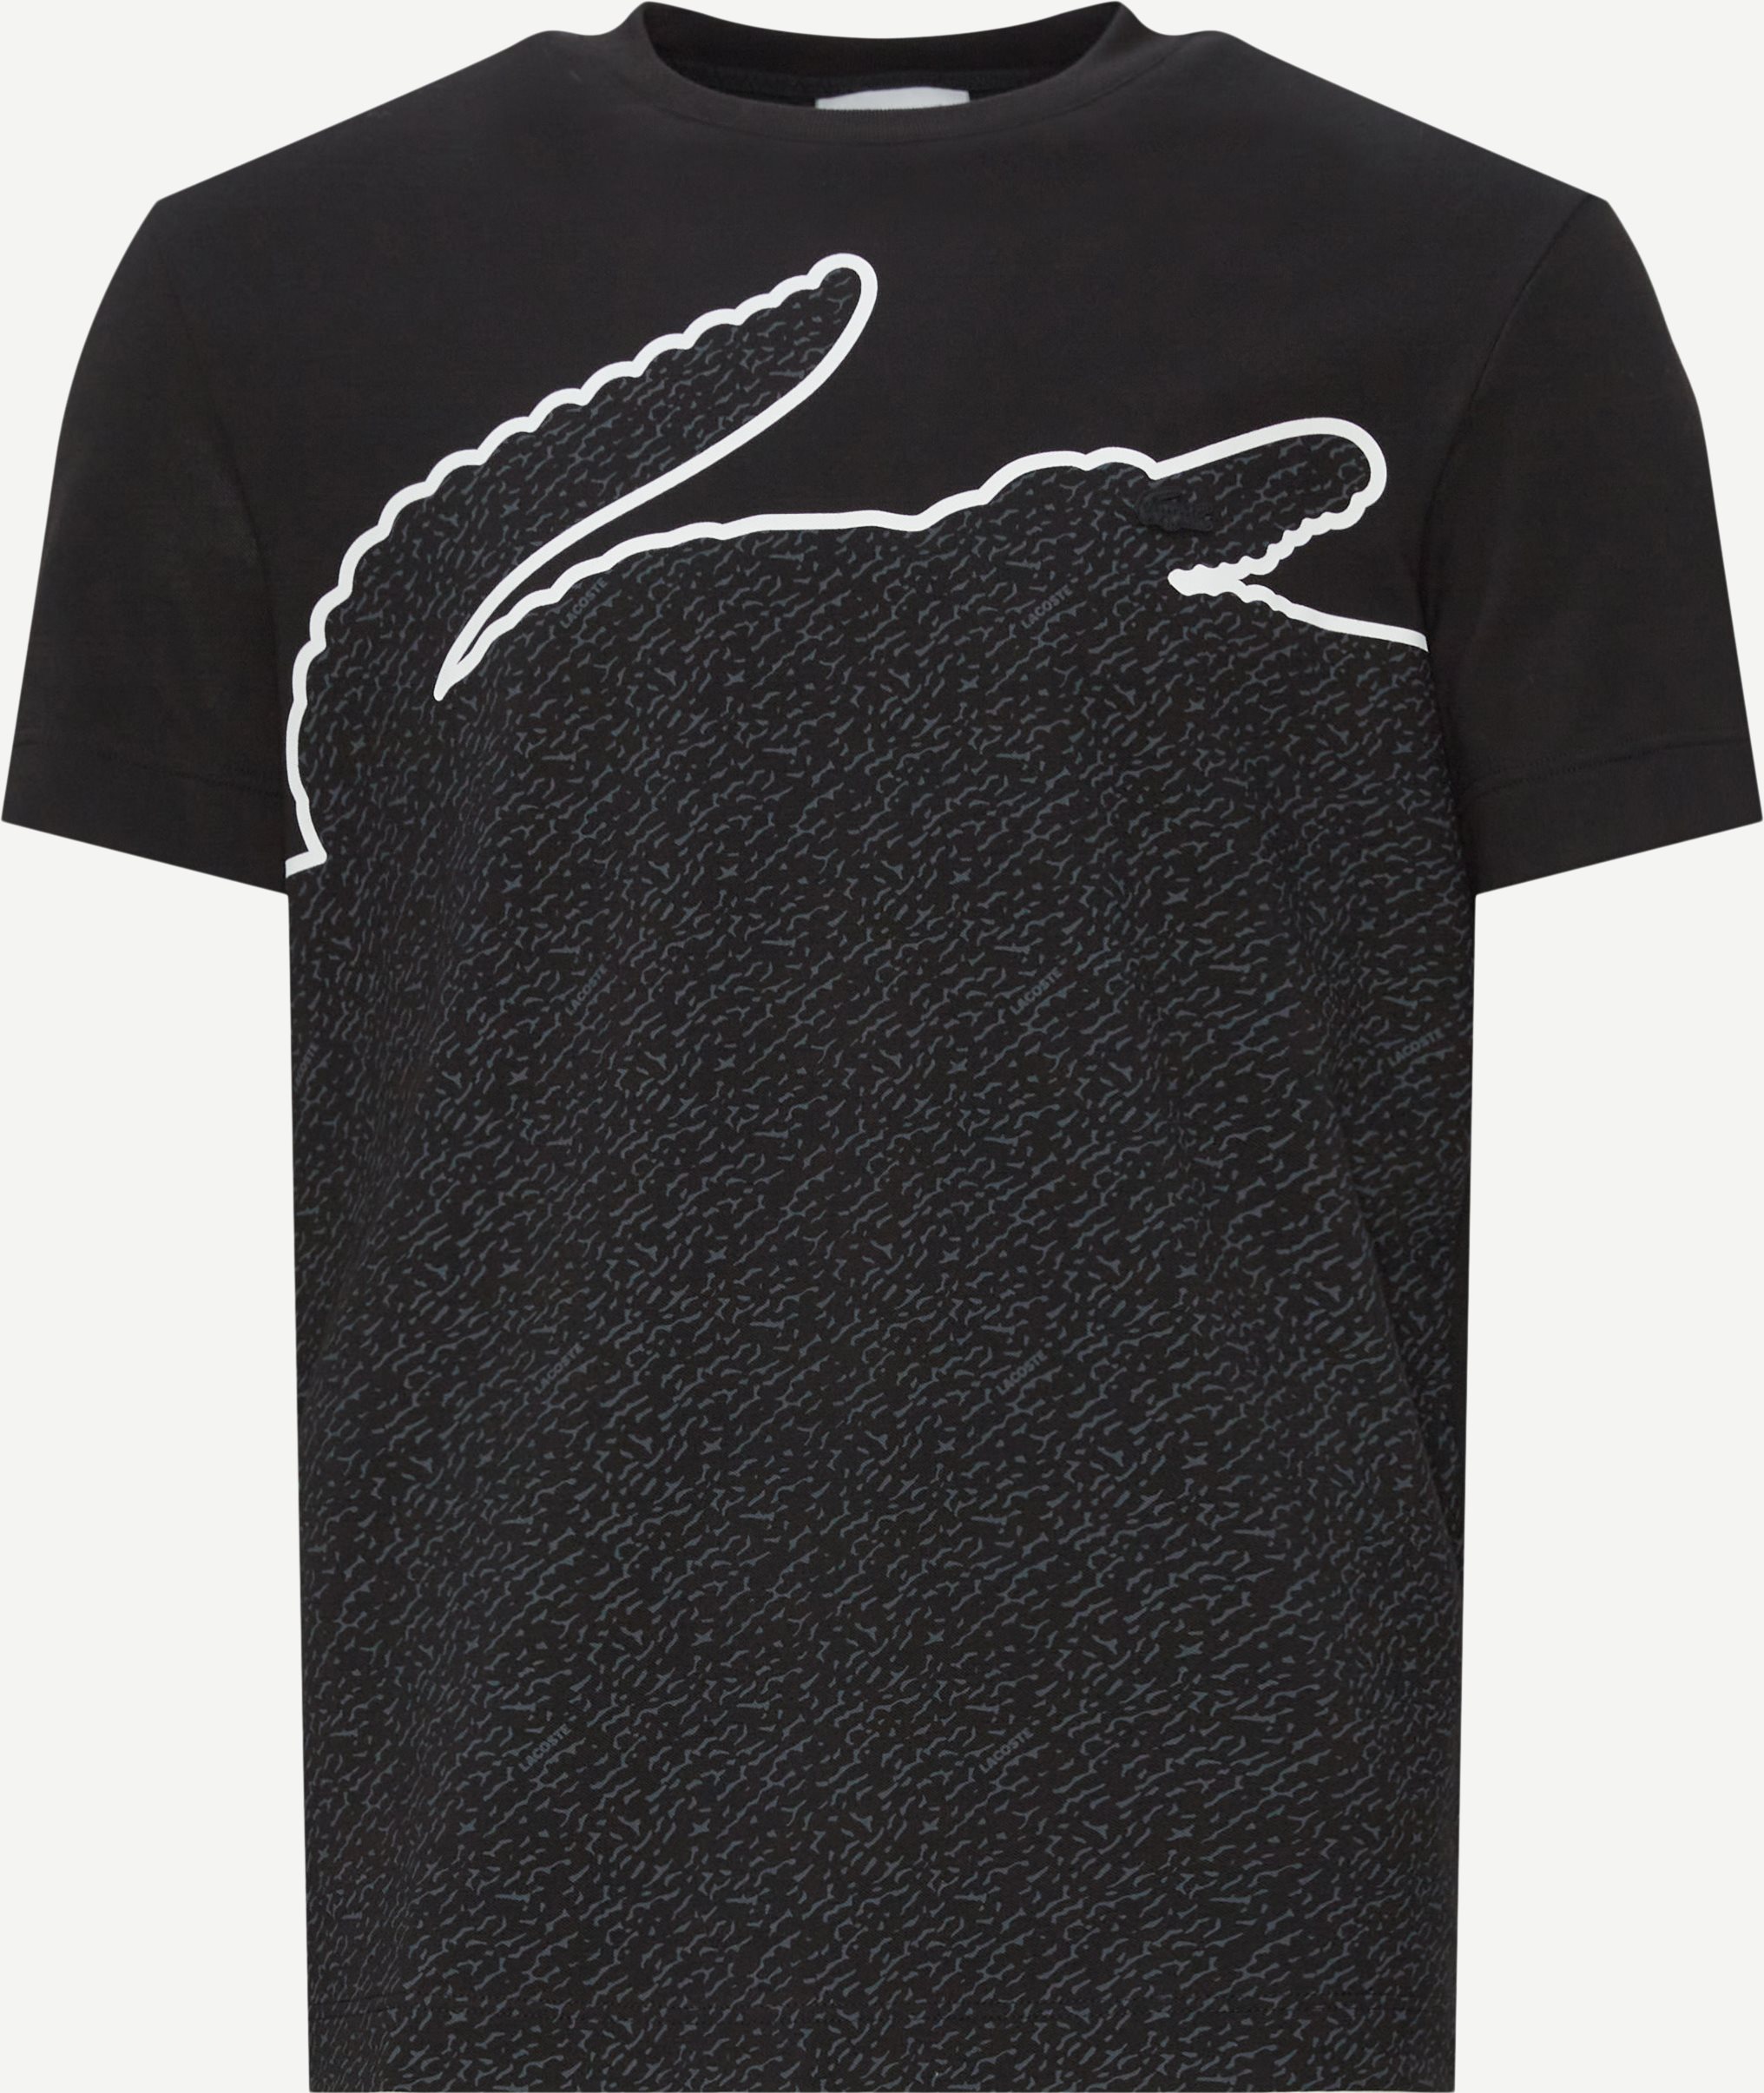 Pique Blend T-shirt - T-shirts - Regular fit - Black